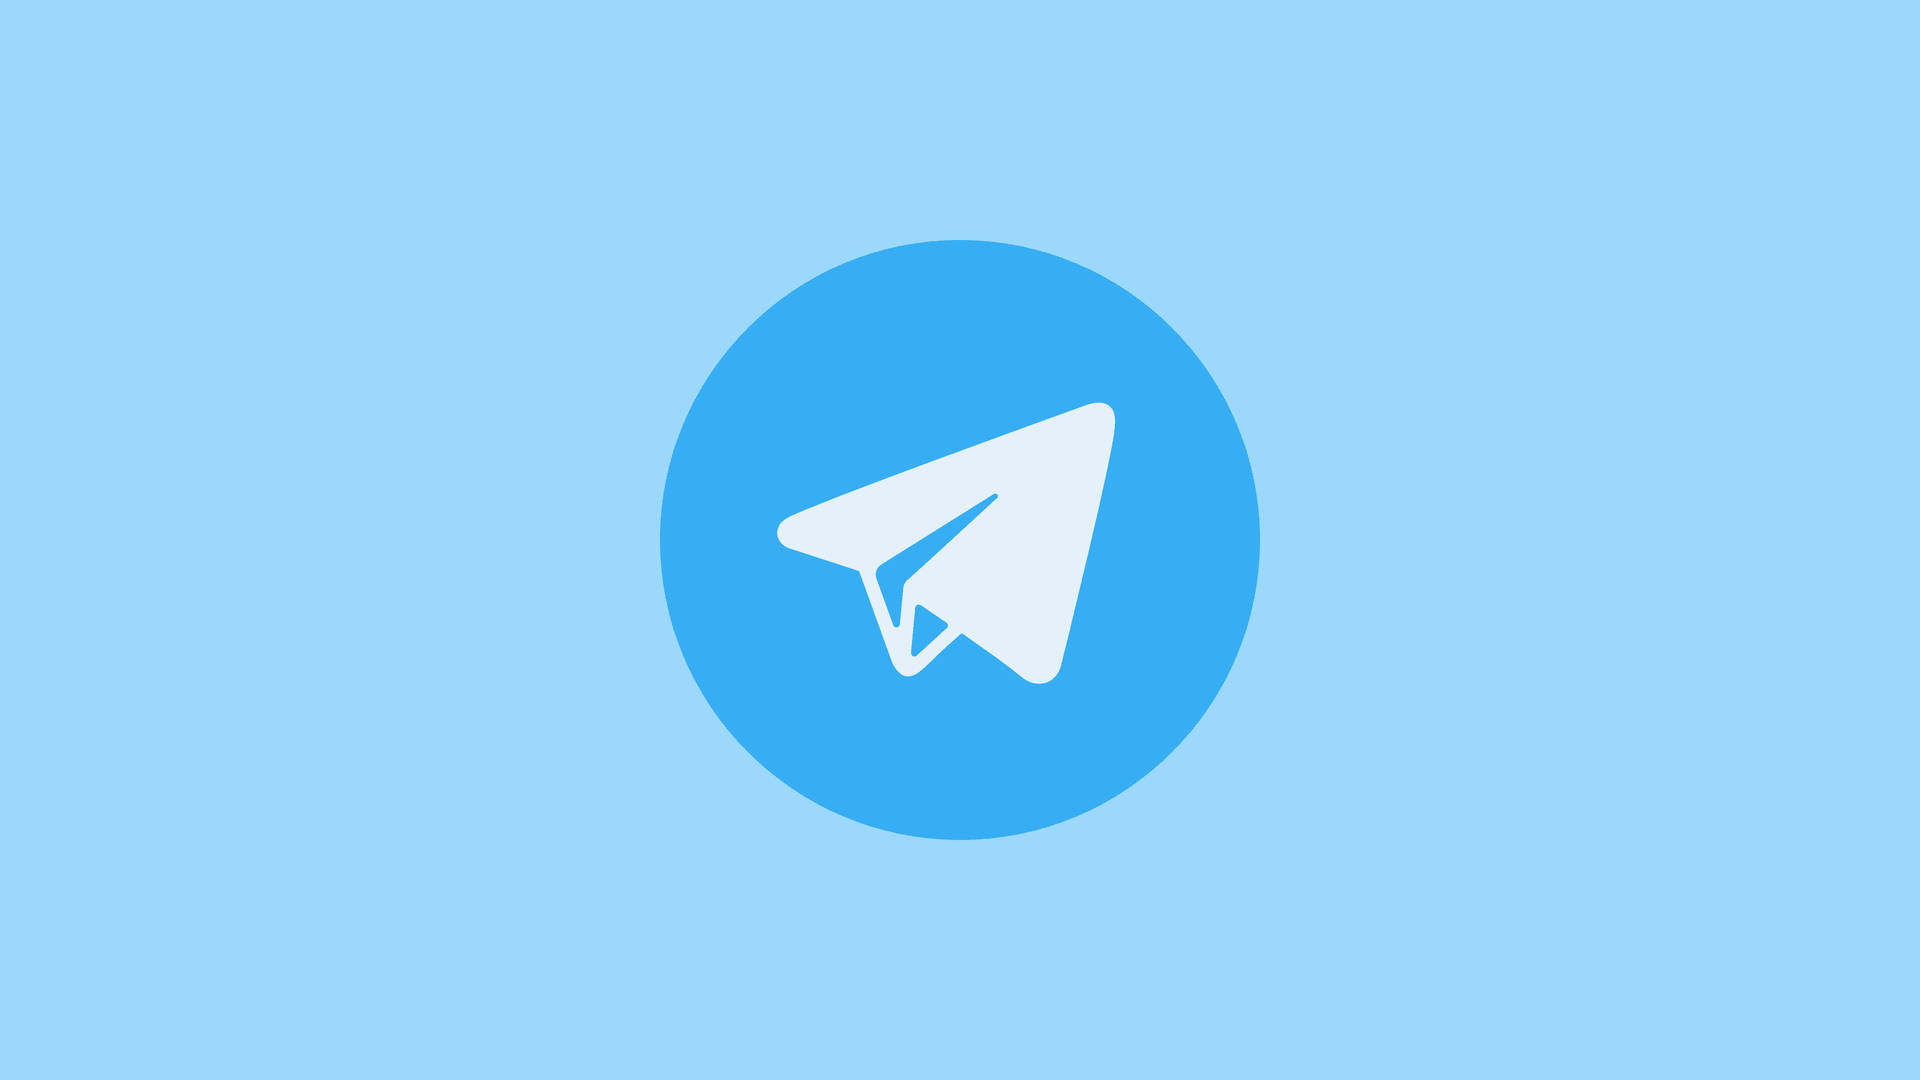 Logotipode Telegram En Un Círculo Azul Fondo de pantalla